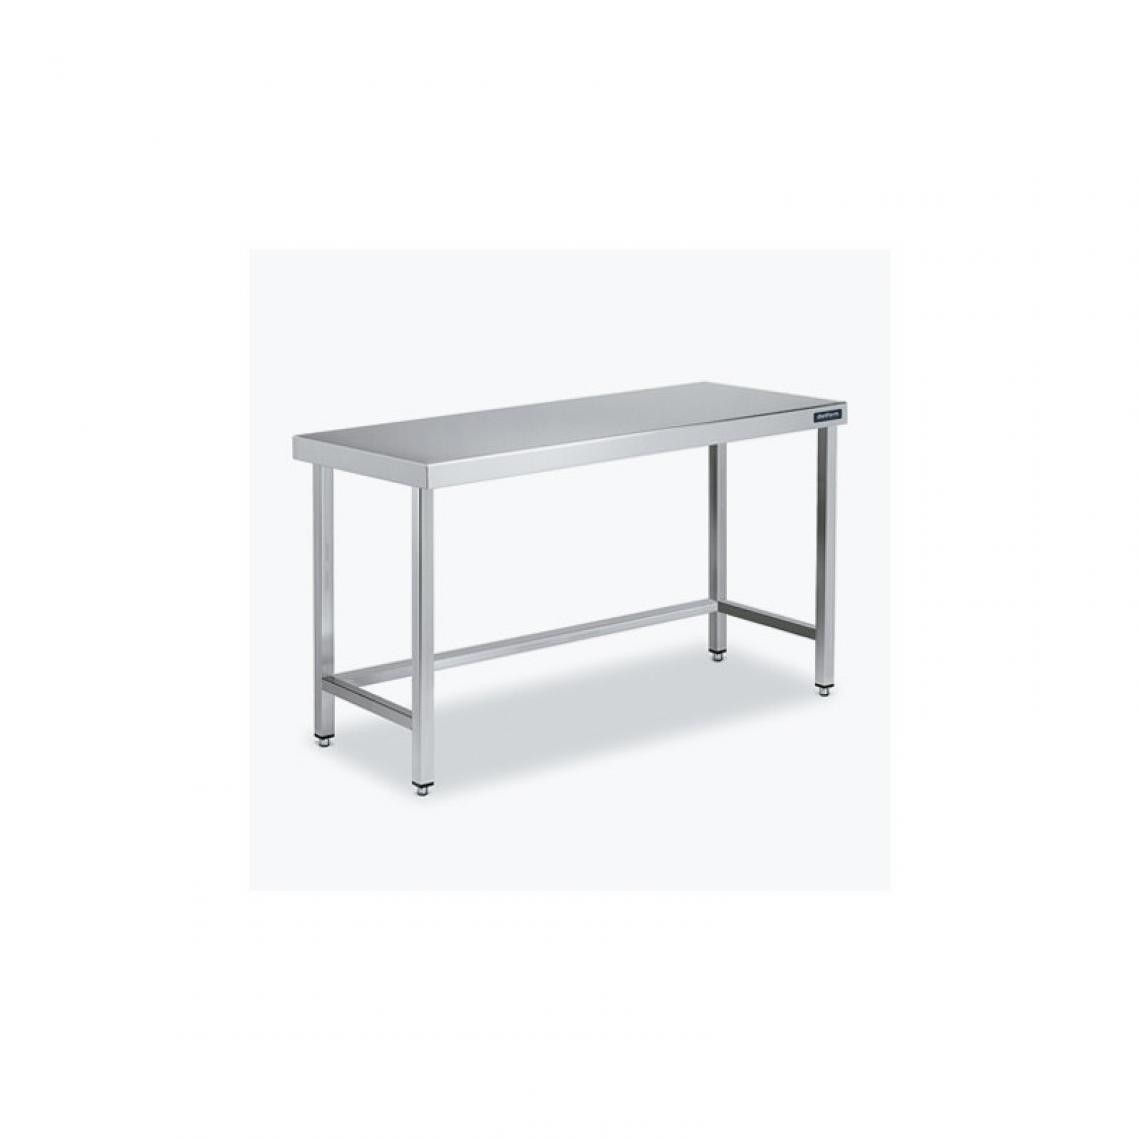 DISTFORM - Table Centrale 600x900 avec Renforts - Distform - Inox 18/101600x900x850mm - Tables à manger